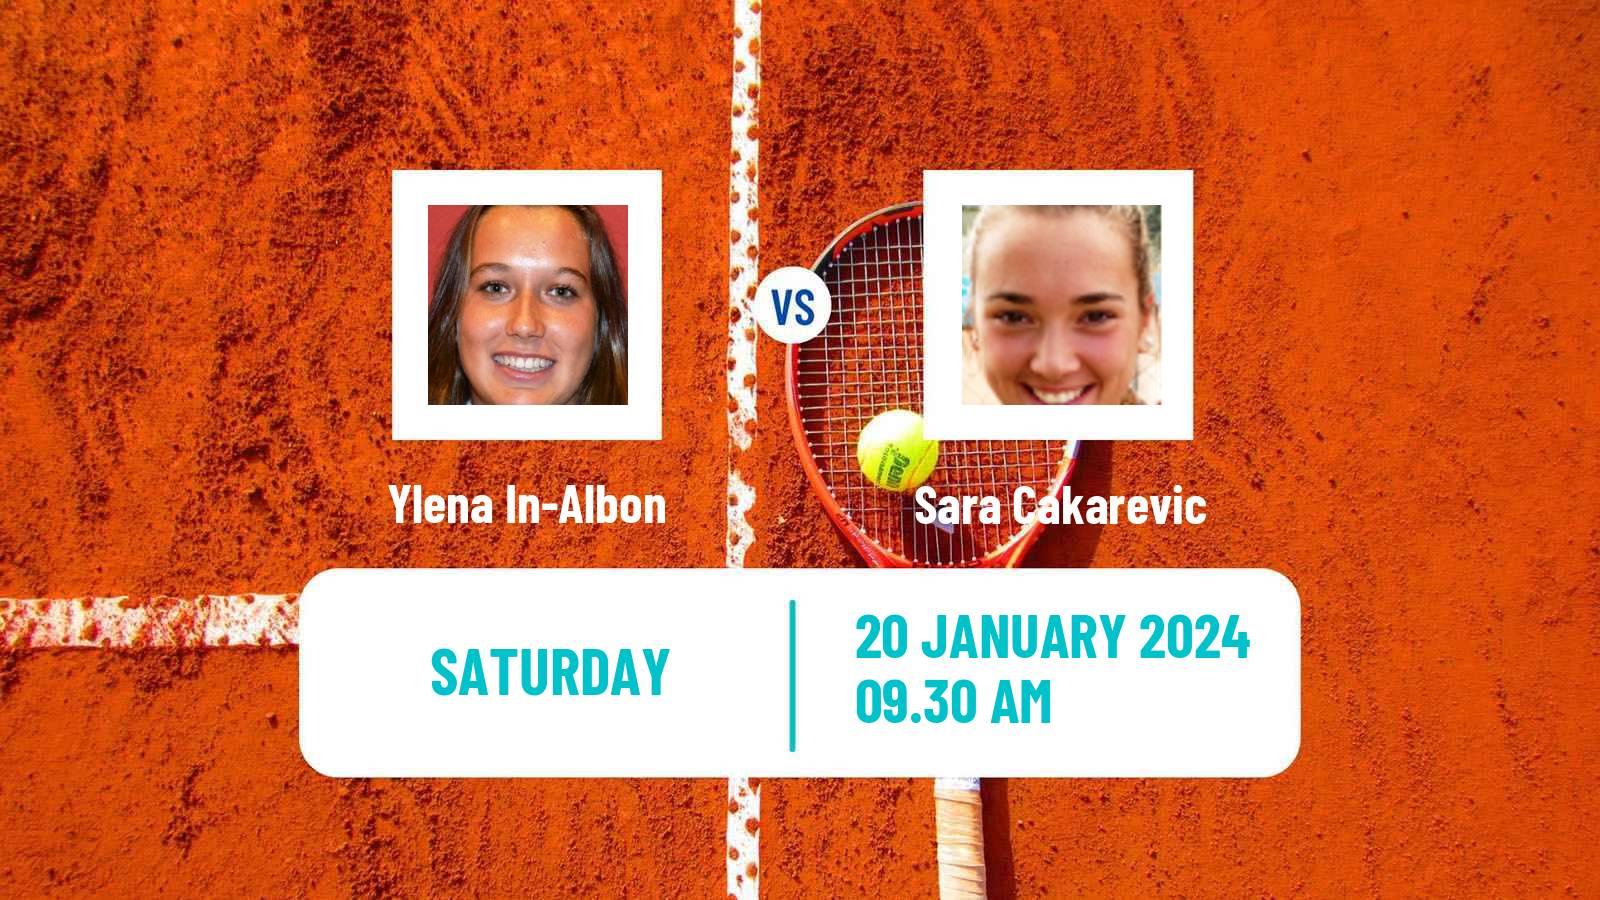 Tennis ITF W35 Buenos Aires Women Ylena In-Albon - Sara Cakarevic